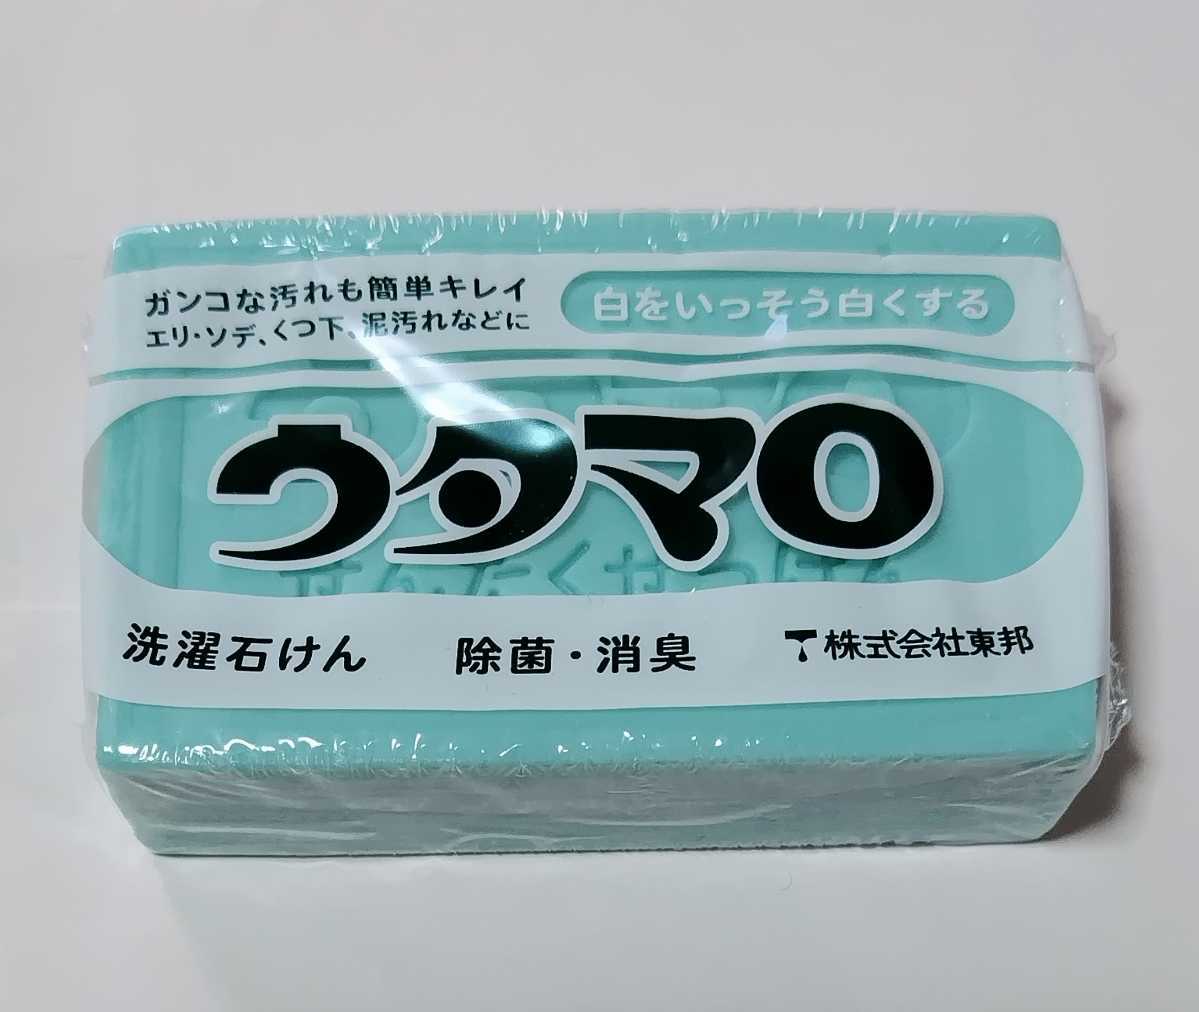 [ не использовался товар ]utamaro камень ..133g стирка для часть мытье для стирка камень ..* сделано в Японии * стирка мыло неподатливый грязь загрязнения устранение бактерий дезодорация * восток .